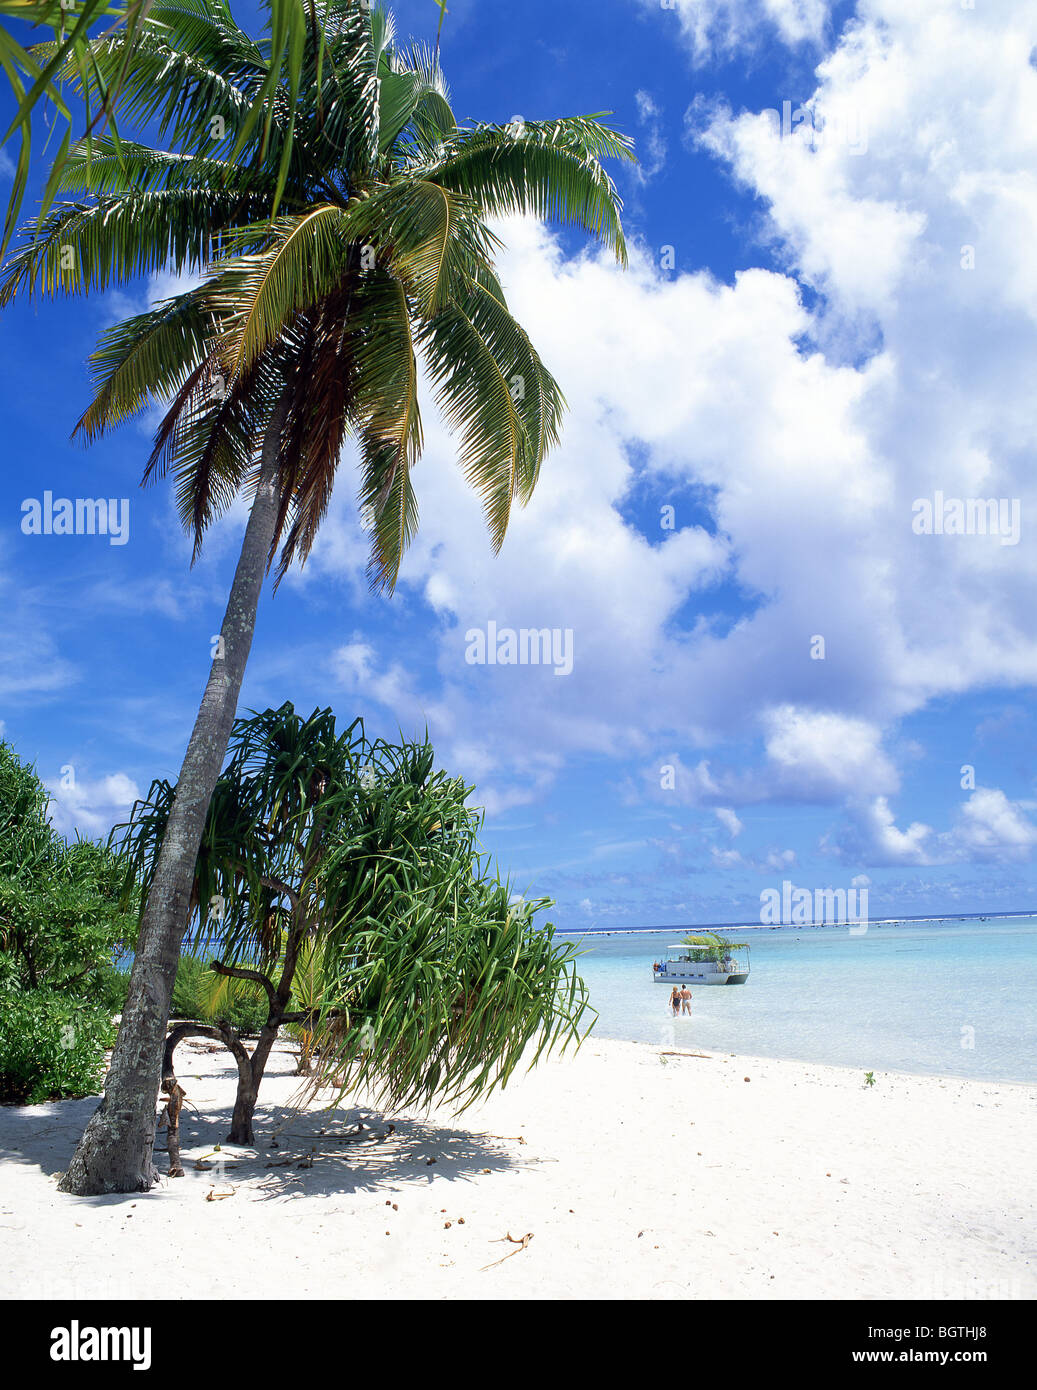 Tropical beach, Aitutaki Atoll, Cook Islands, South Pacific Ocean Stock ...